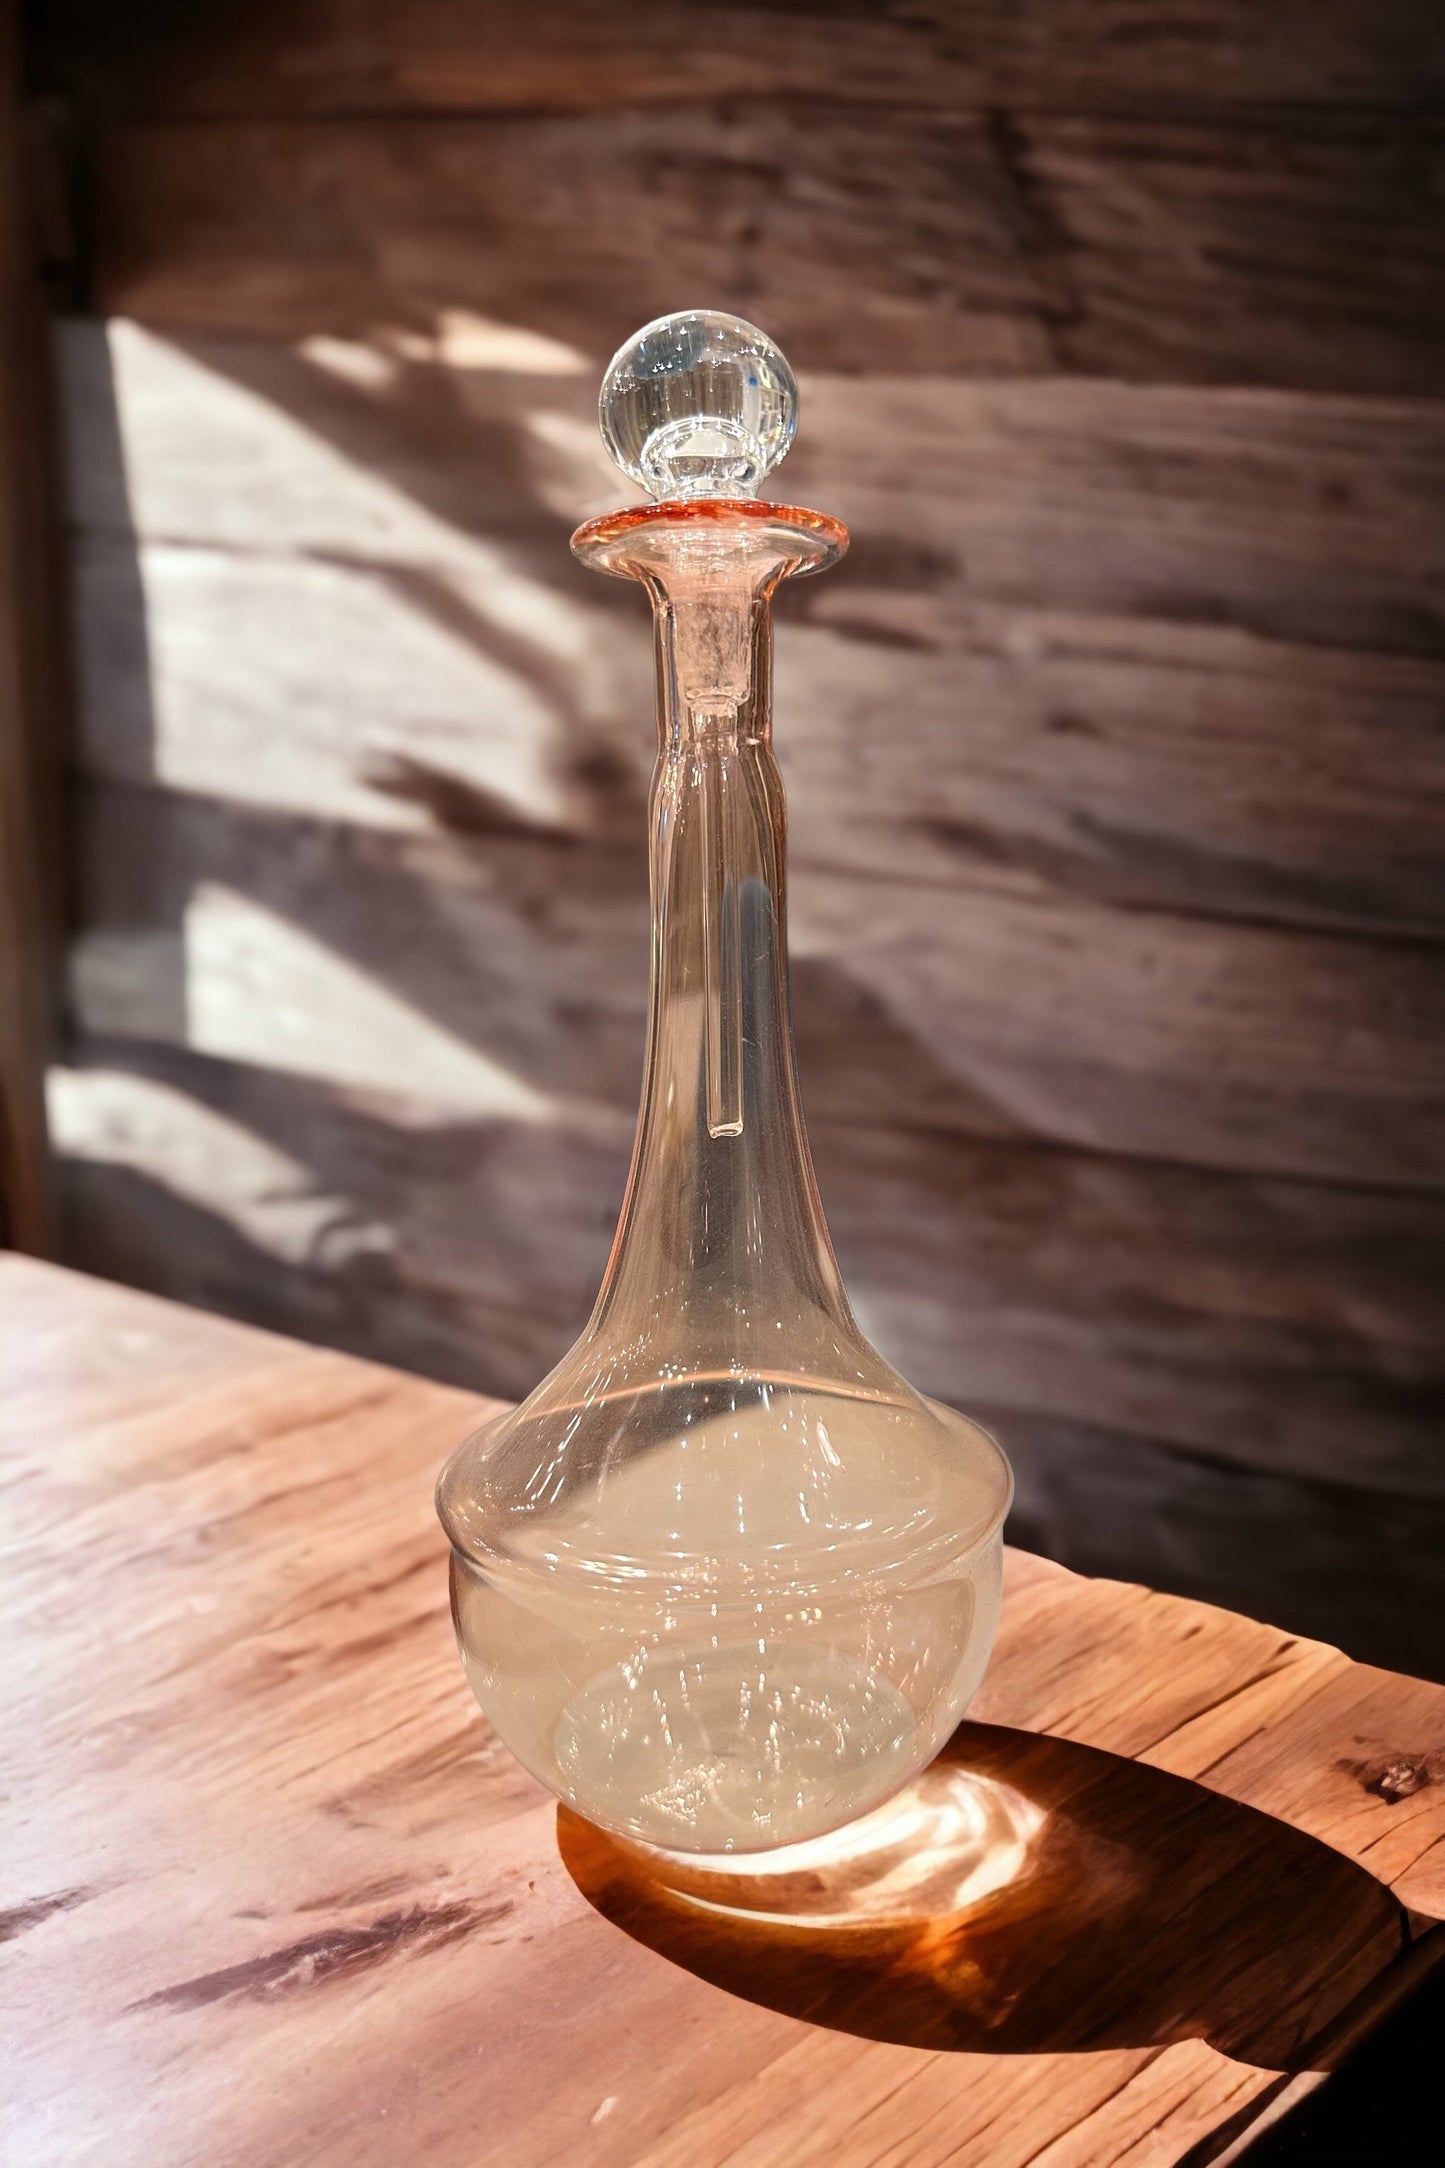 Glass perfume bottle with stopper - Modern perfume bottles - perfume holder - decorative bottles - Glass bottles  - Egyptian decor